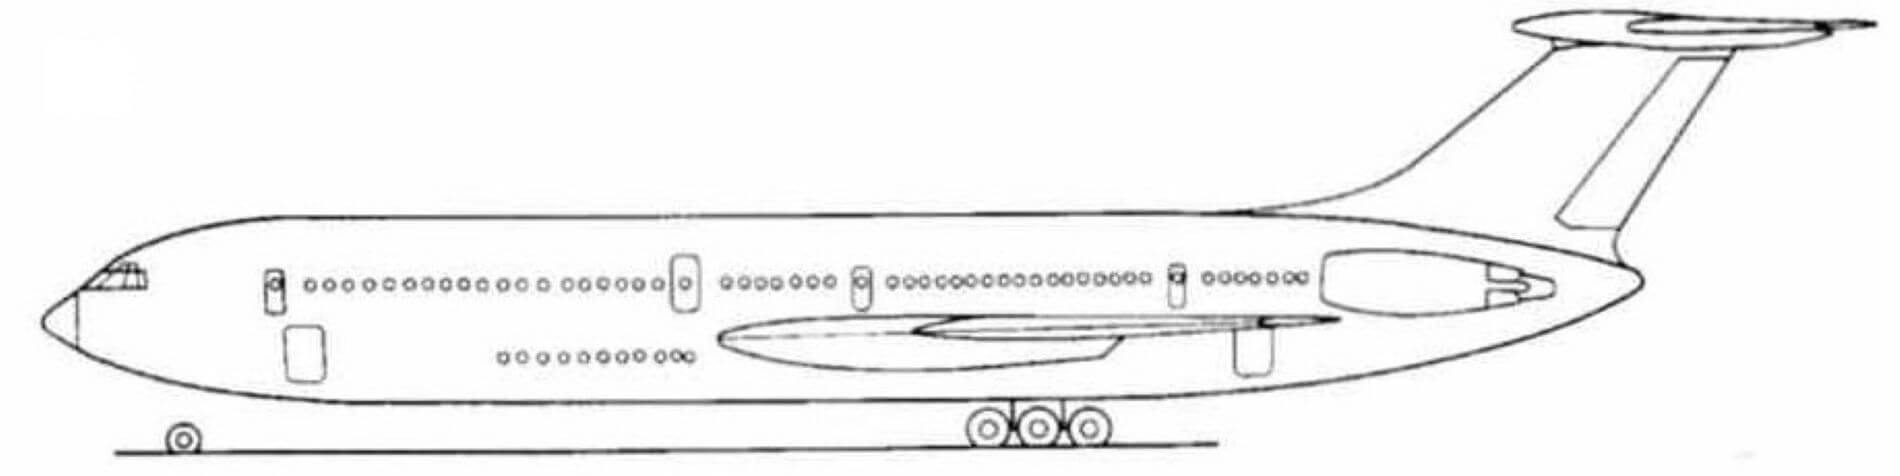 Il-86 doubledecker